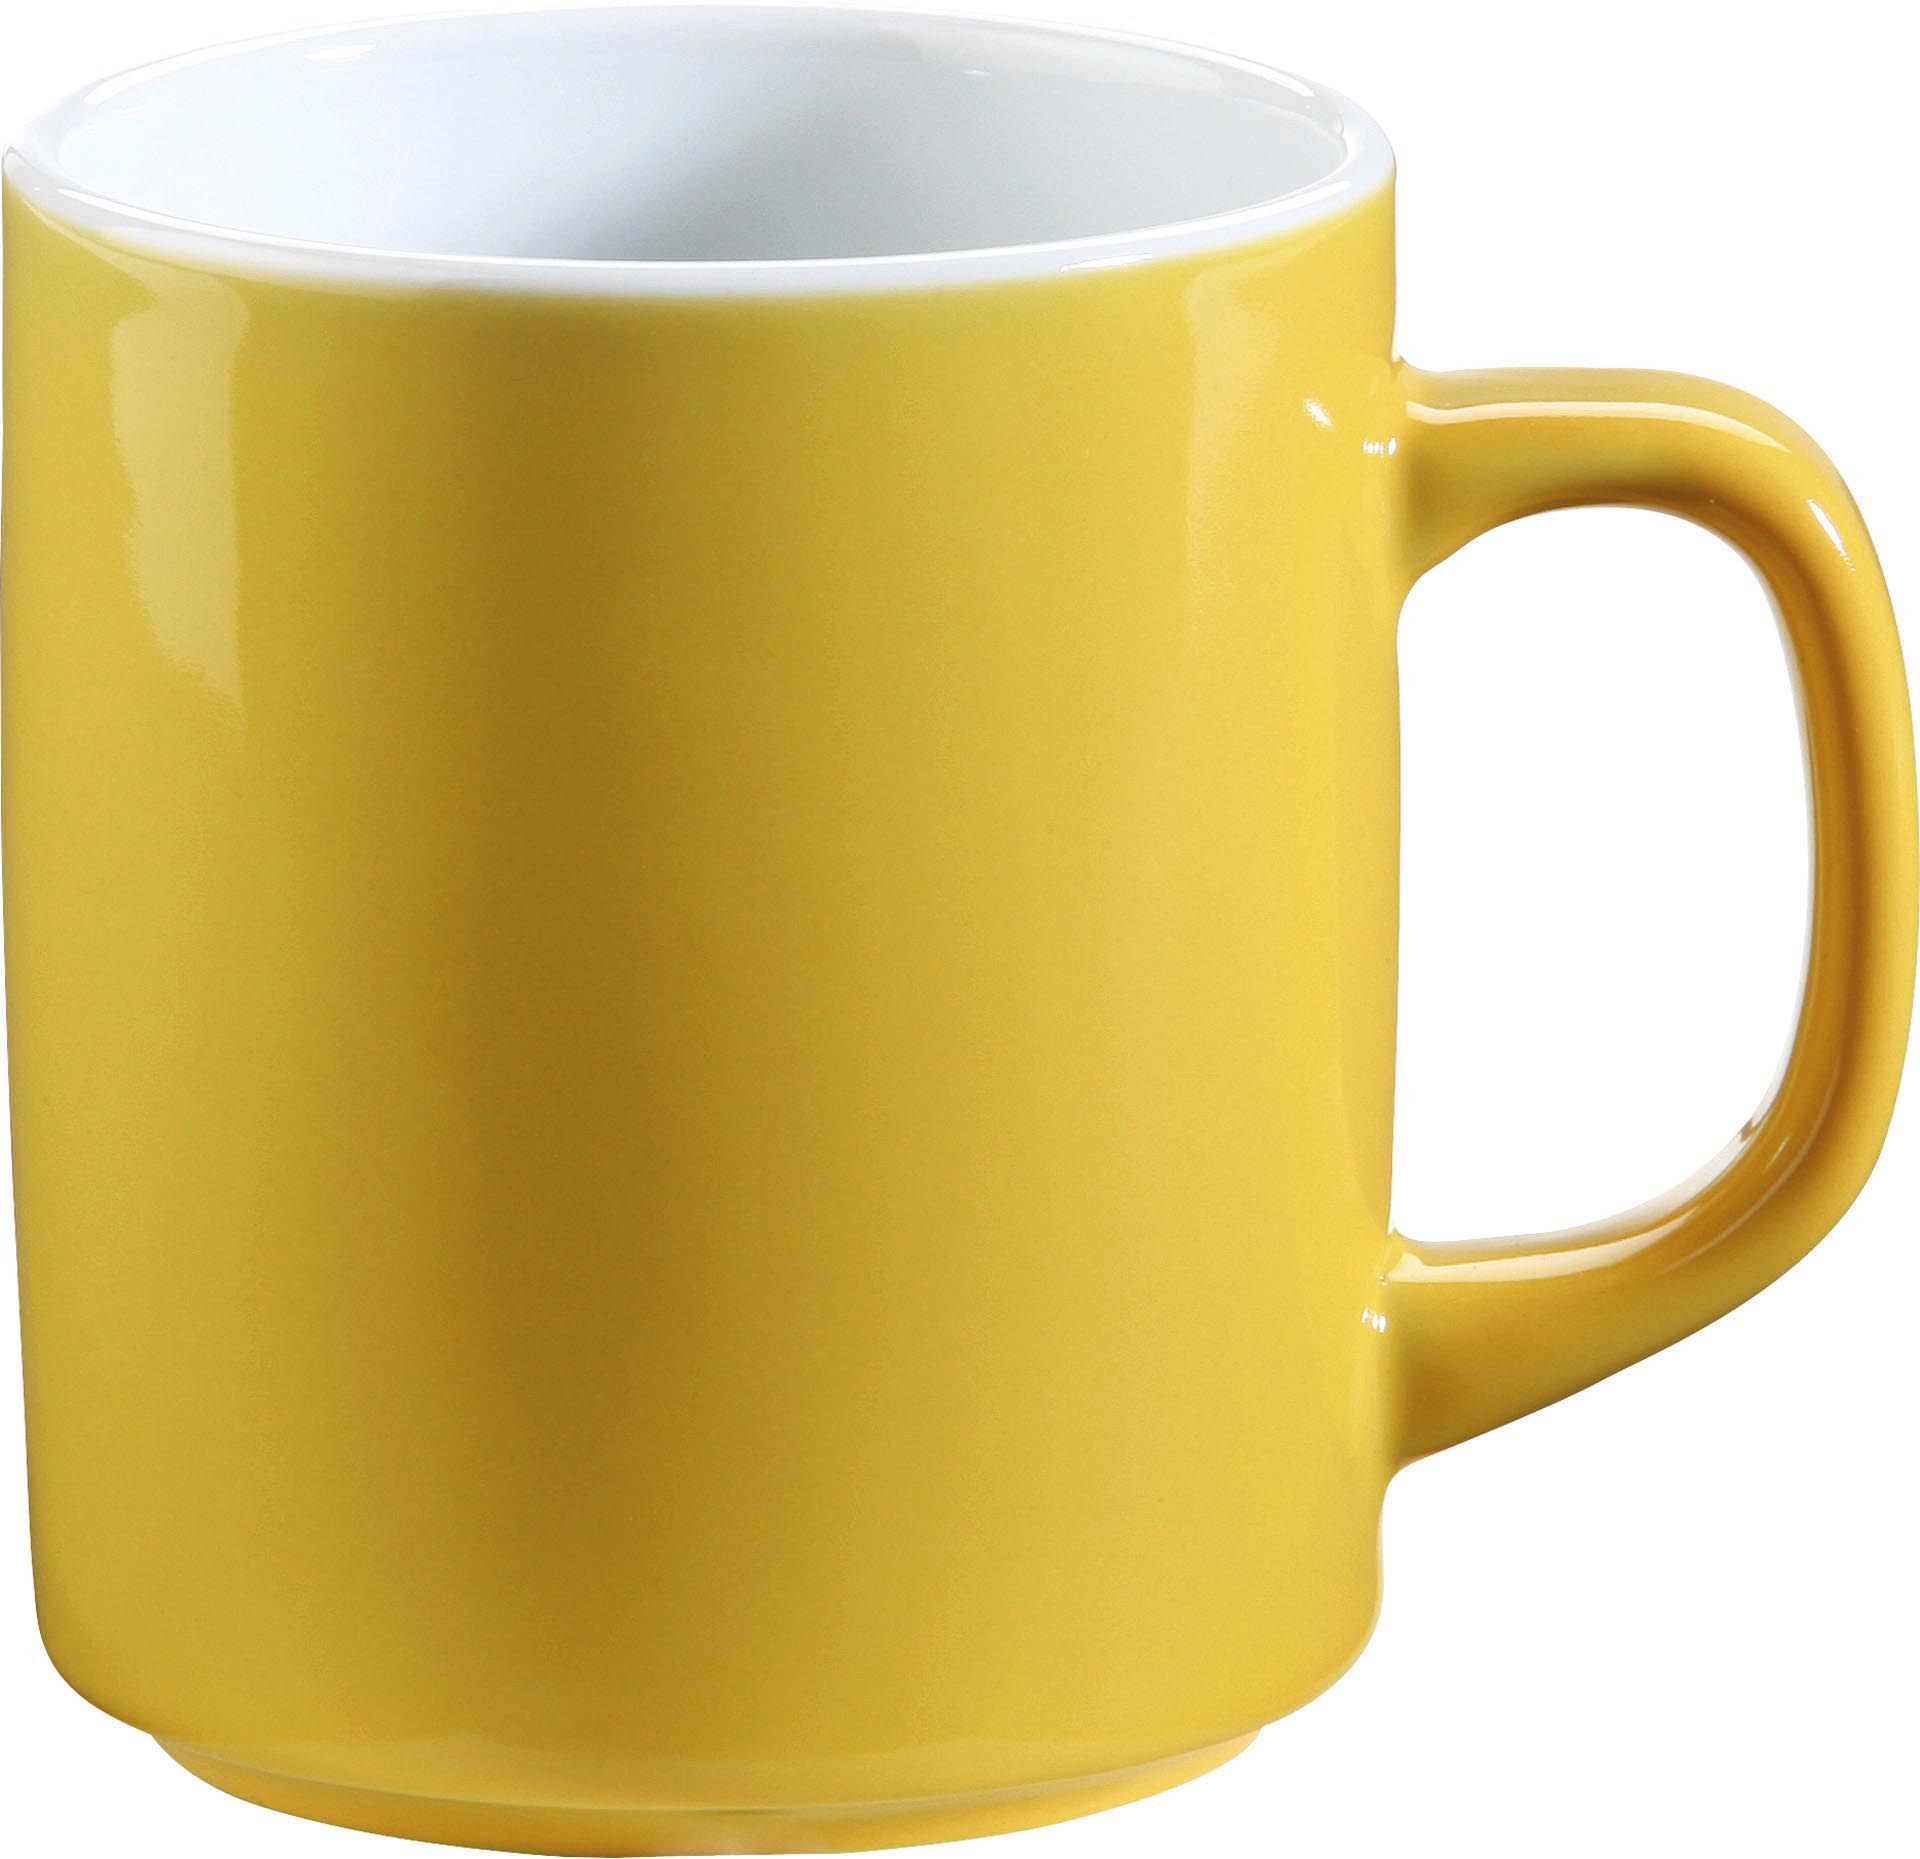 Kaffeebecher "System color" 0,3 l gelb